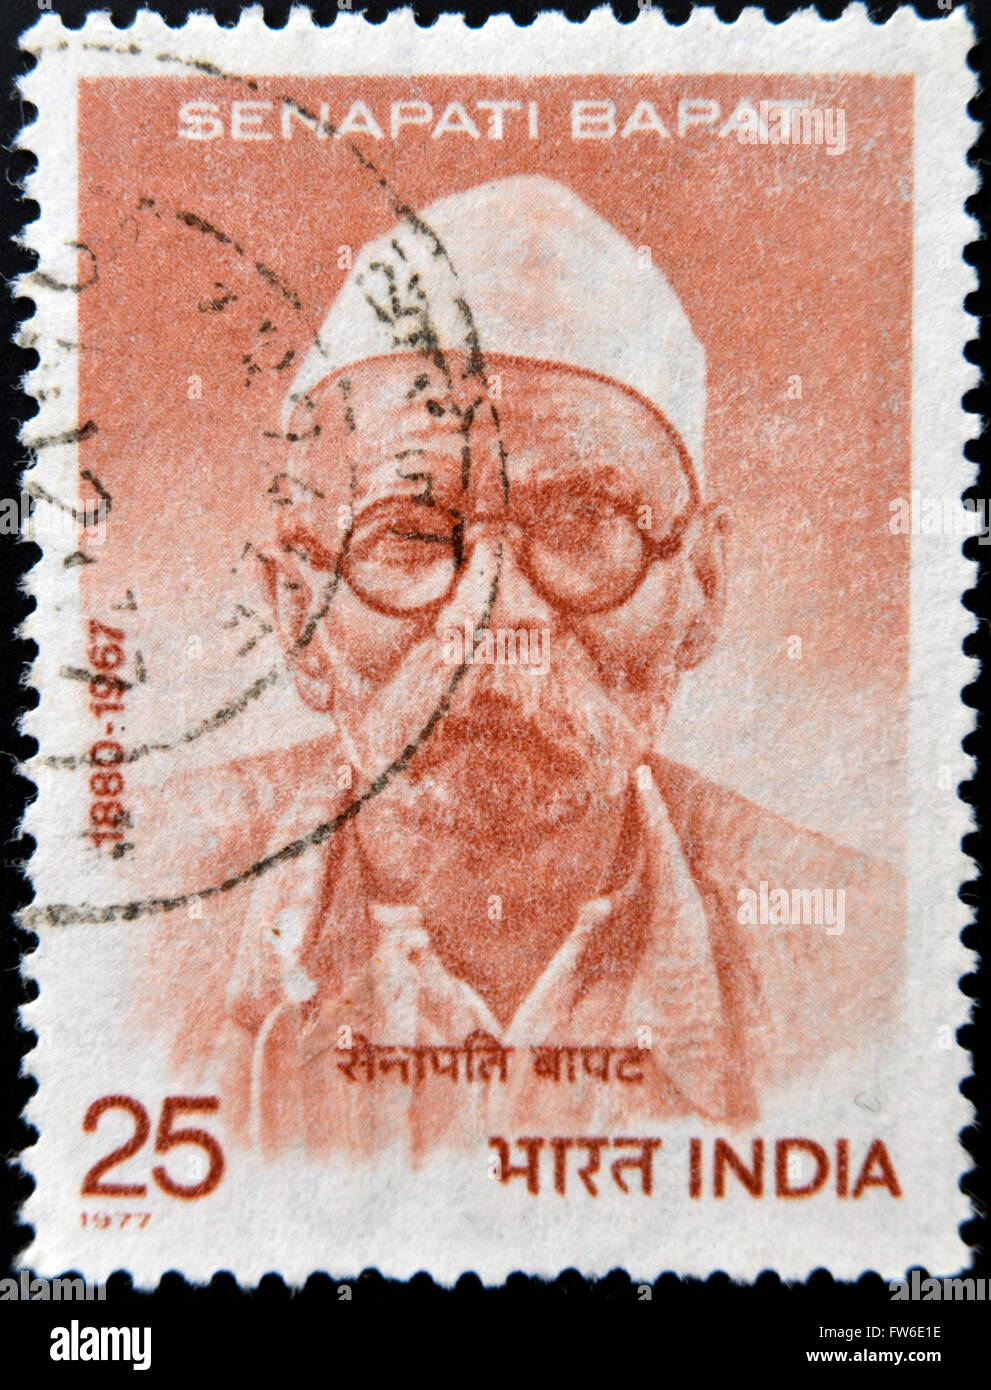 INDIA - CIRCA 1977: stamp printed in India shows Senapati Bapat, circa 1977 Stock Photo